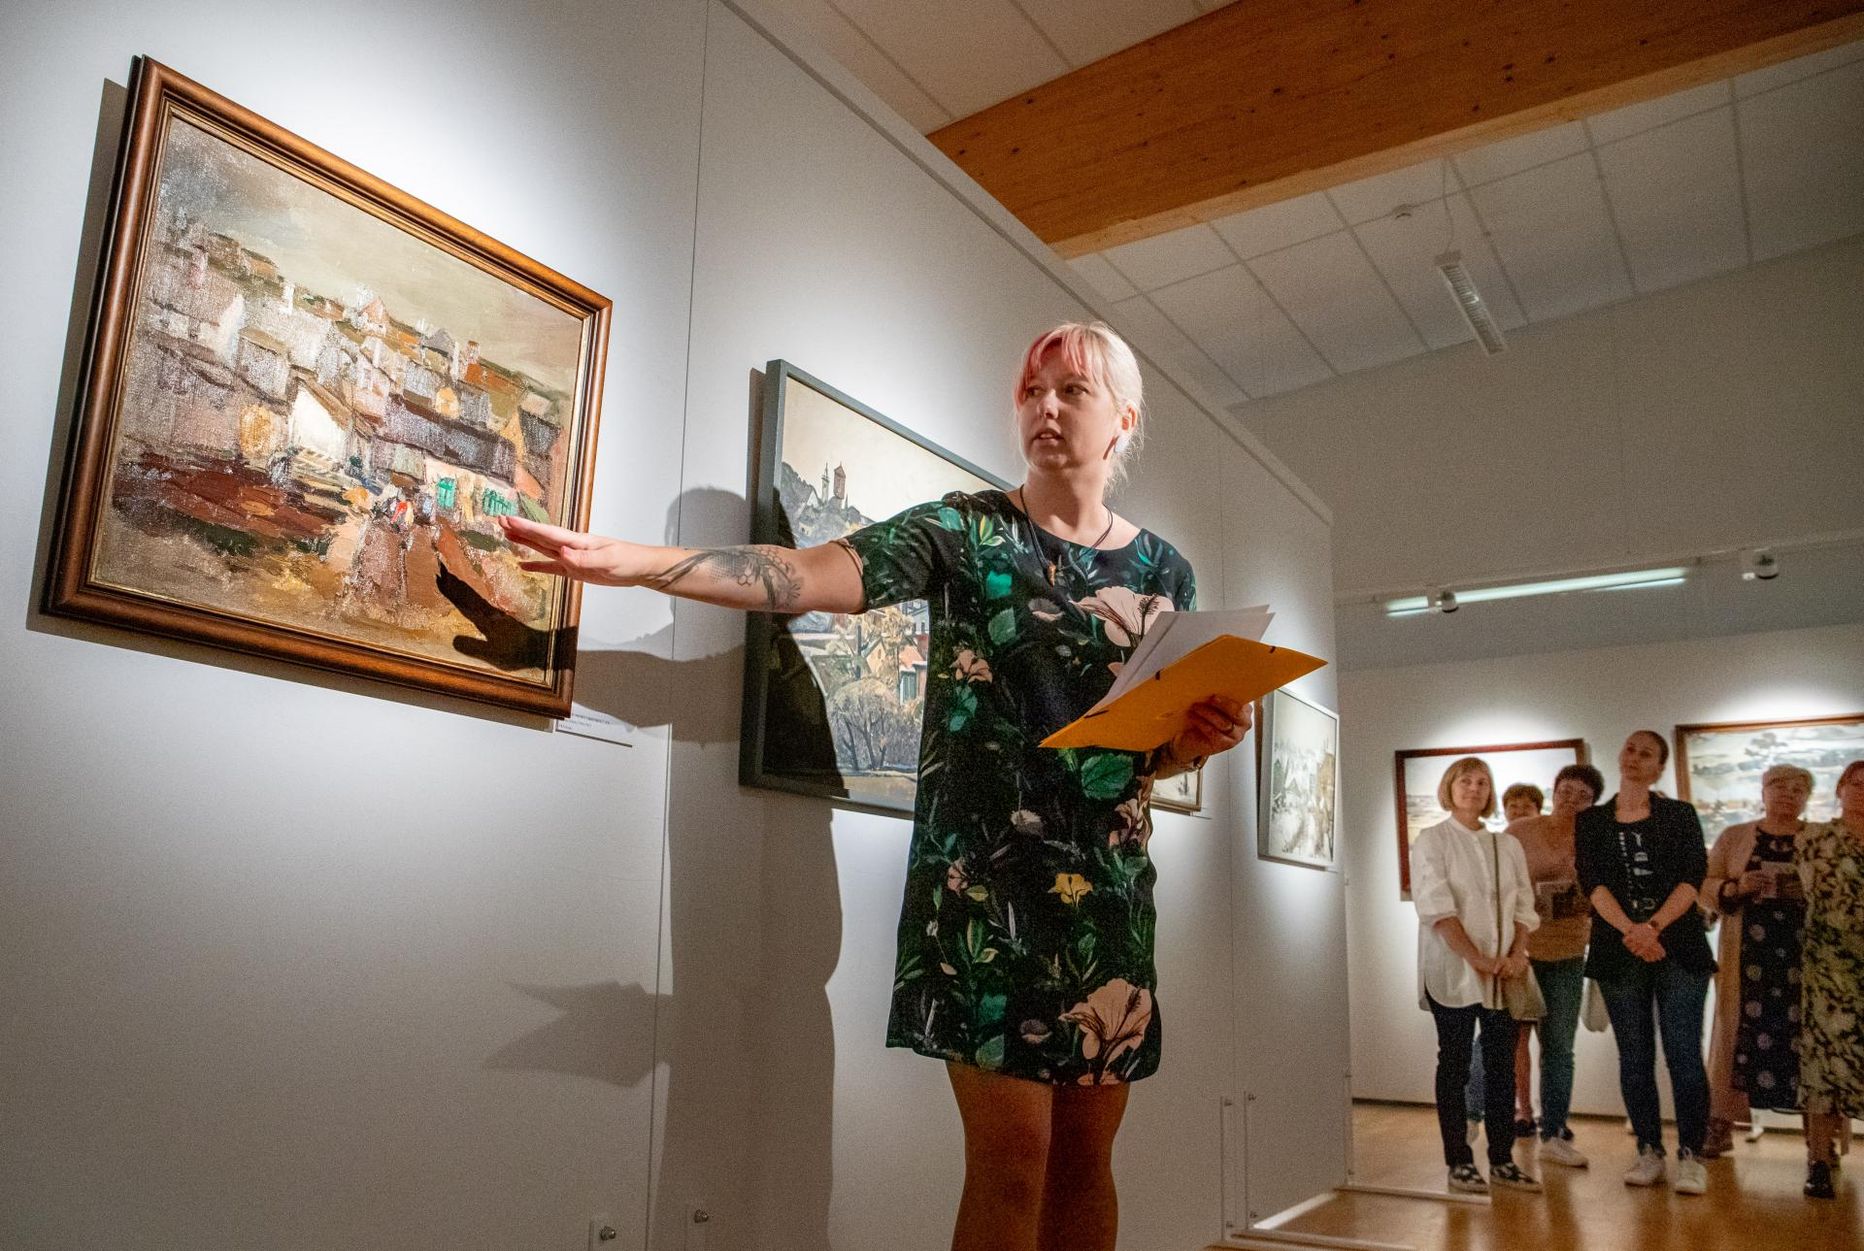 Vändra kunstigalerii avas uue hooaja näitusega “Eesti maastiku ilu” koostöös Eesti kunstimuuseumiga. Teoseid tutvustas kuraator Maris Roost.